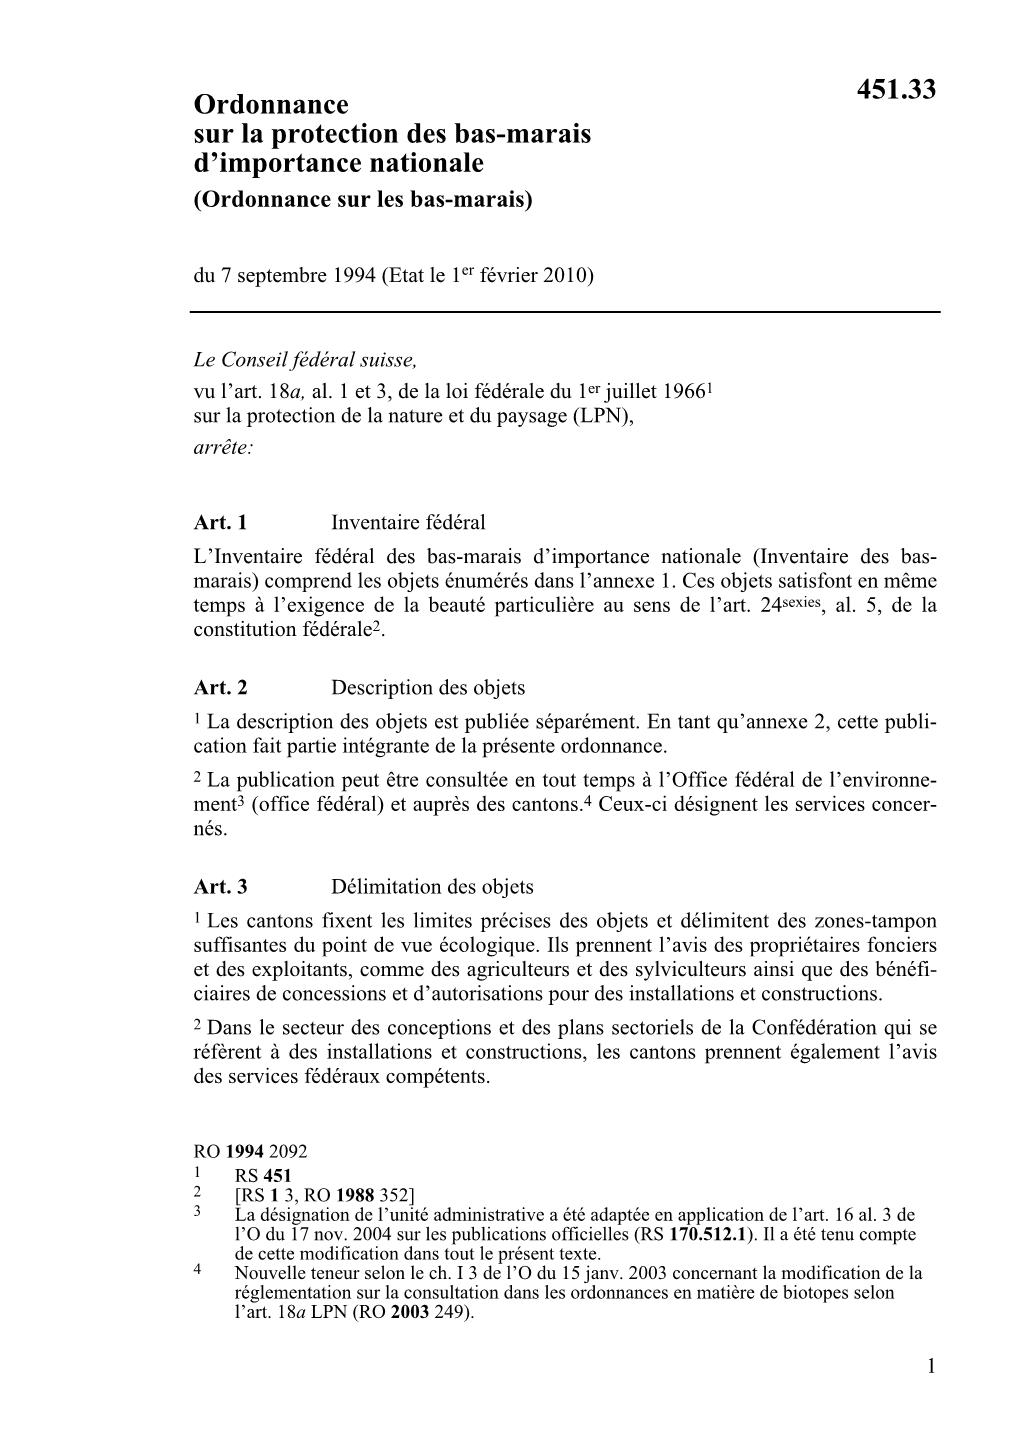 Ordonnance Sur La Protection Des Bas-Marais D'importance Nationale 451.33